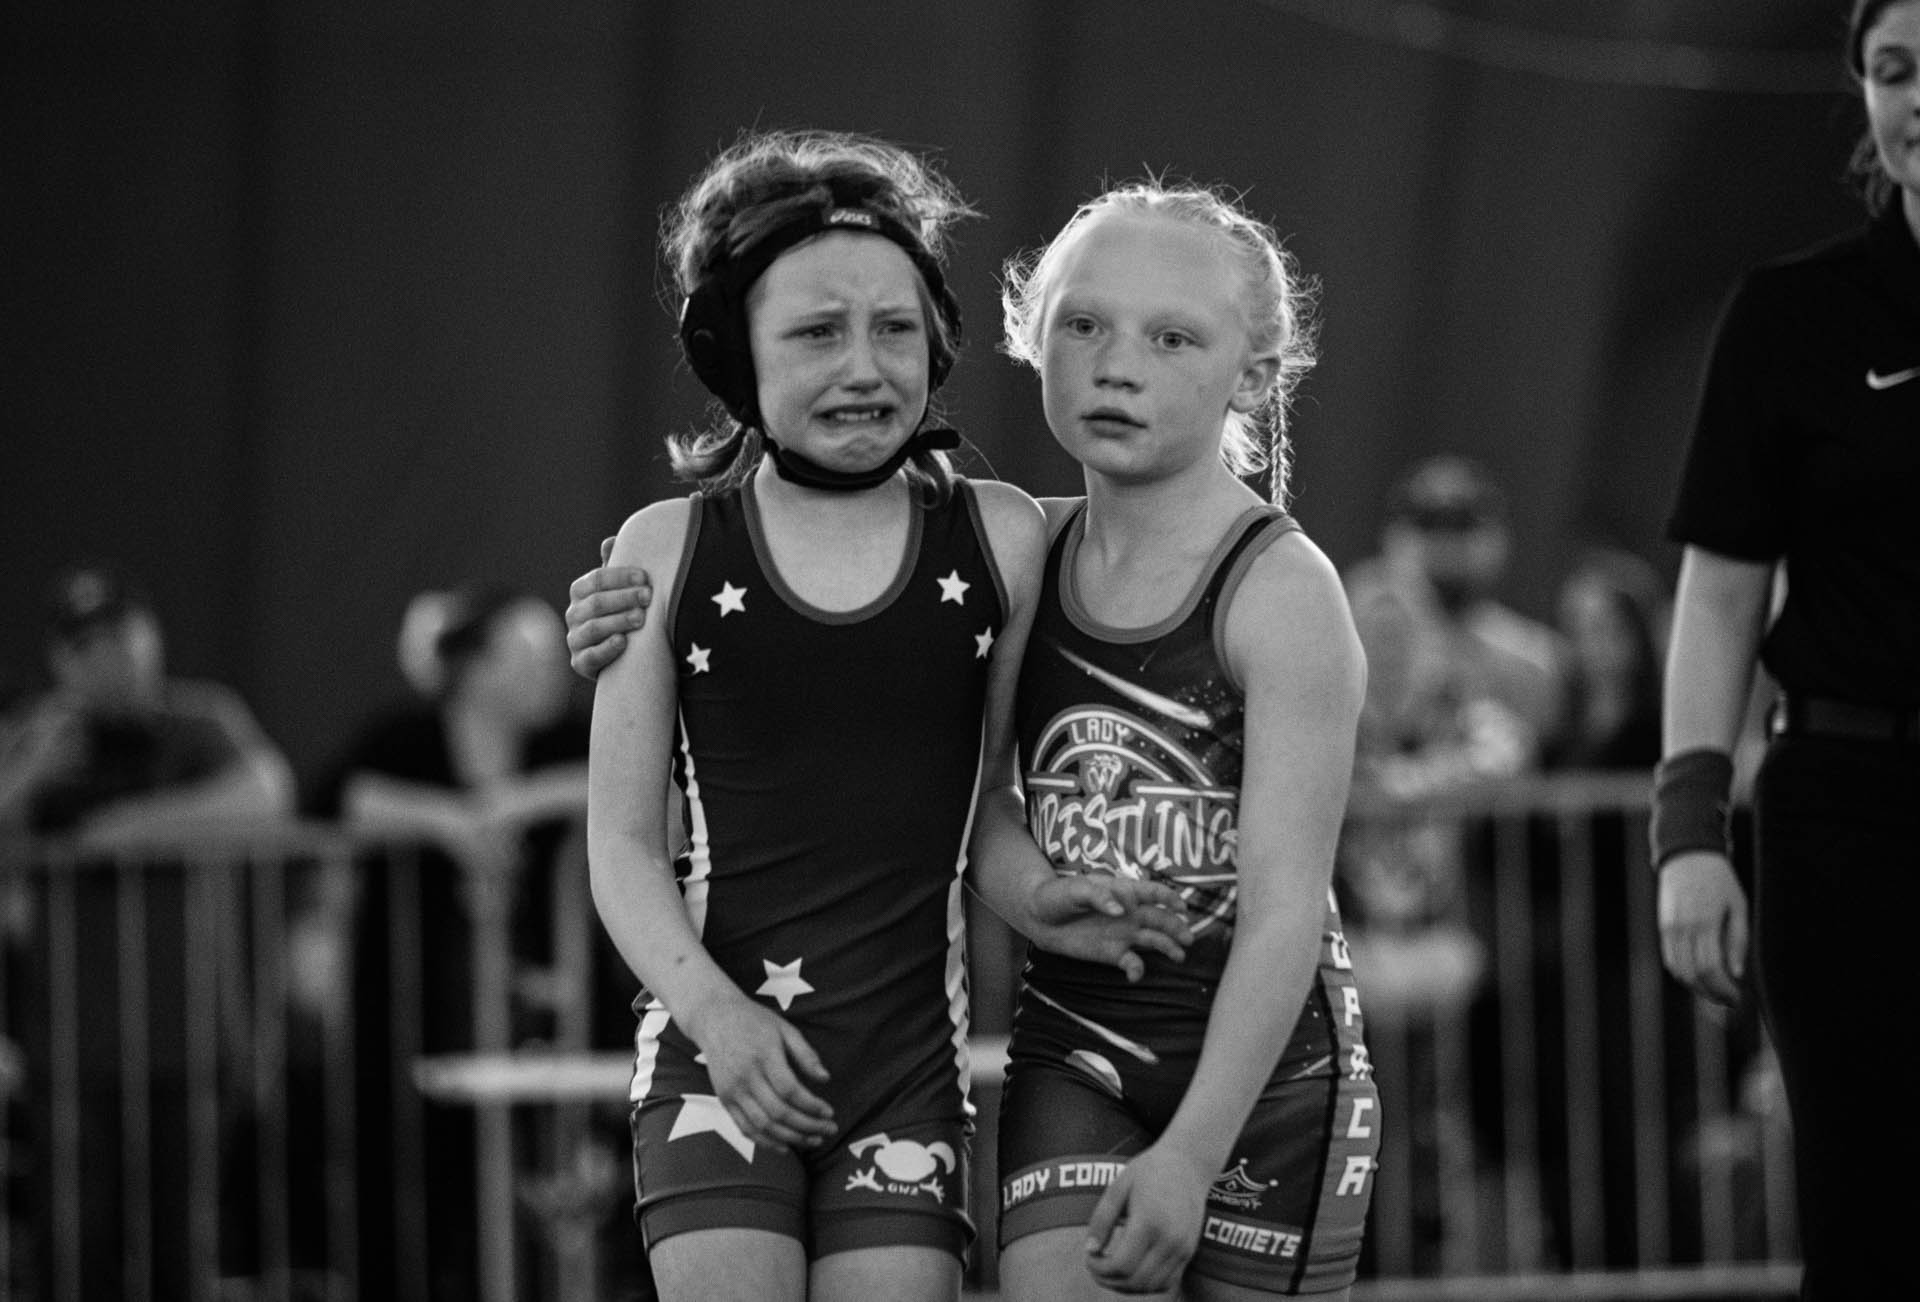 girls-wrestling-wisconsin-dells-state-tournament-little-girls-helping-eye-injury-travis-dewitz-0755.JPG